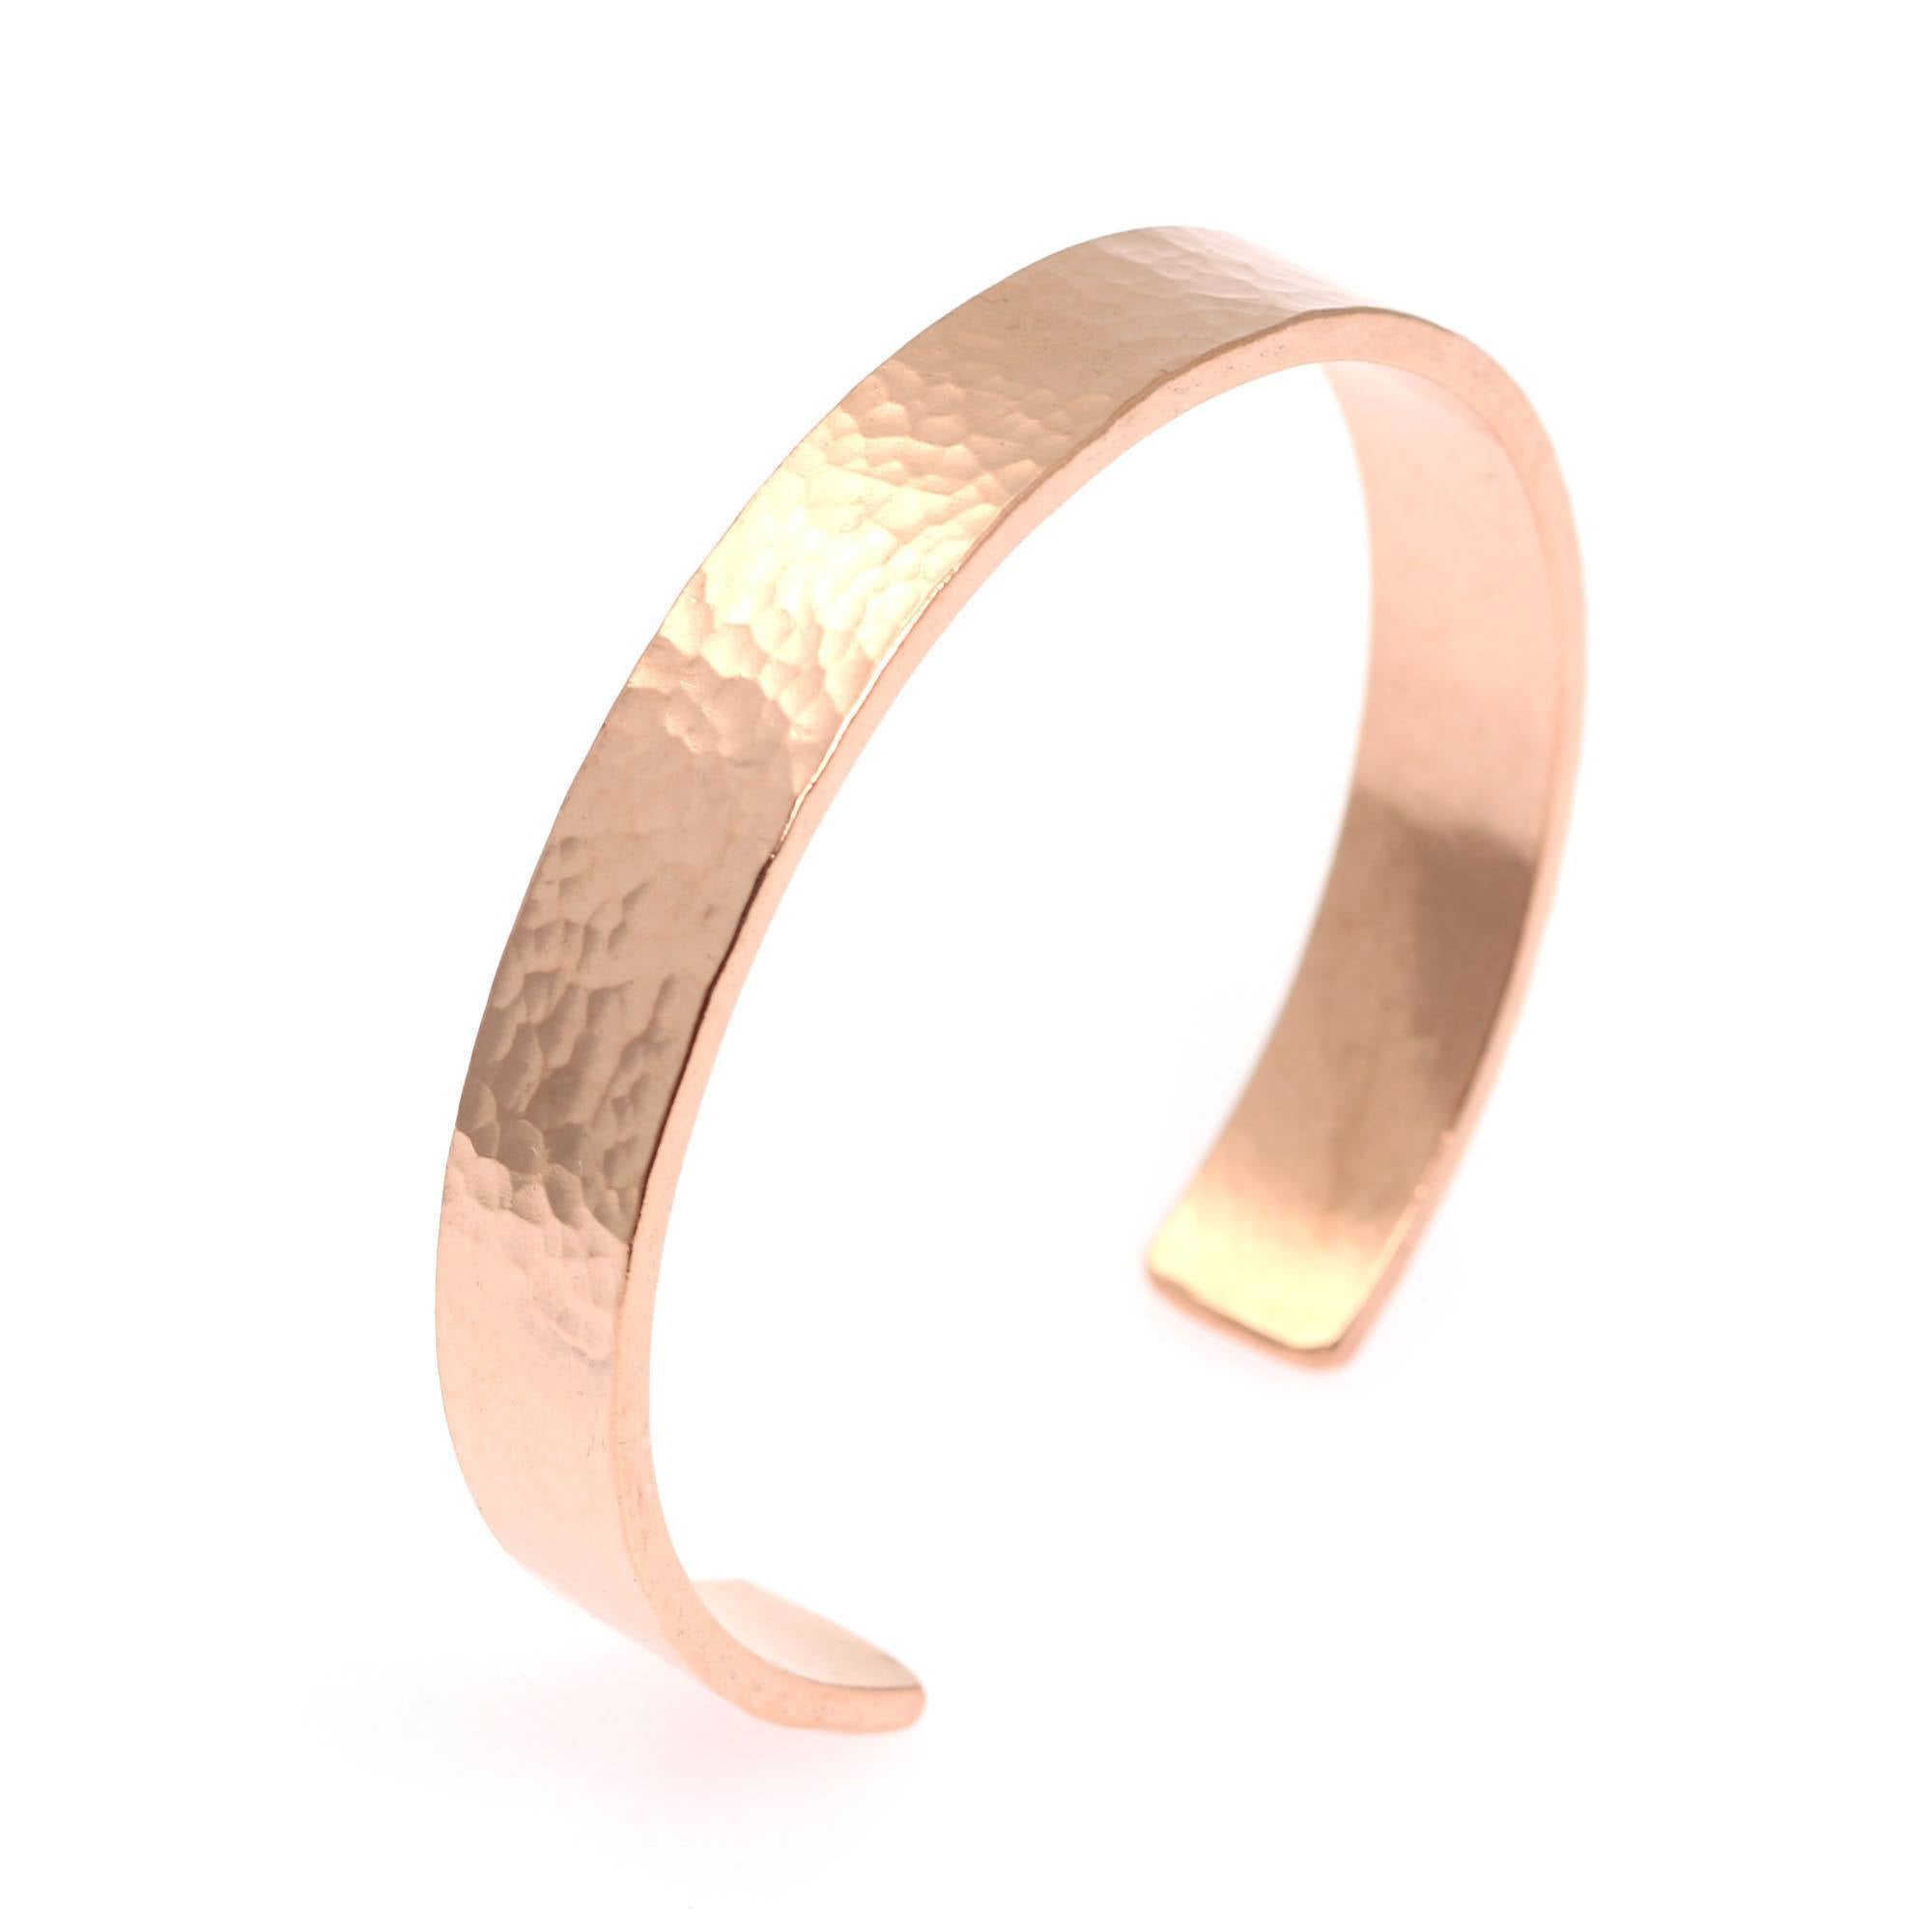 10mm Wide Hammered Copper Cuff Bracelet - Solid Copper Cuff